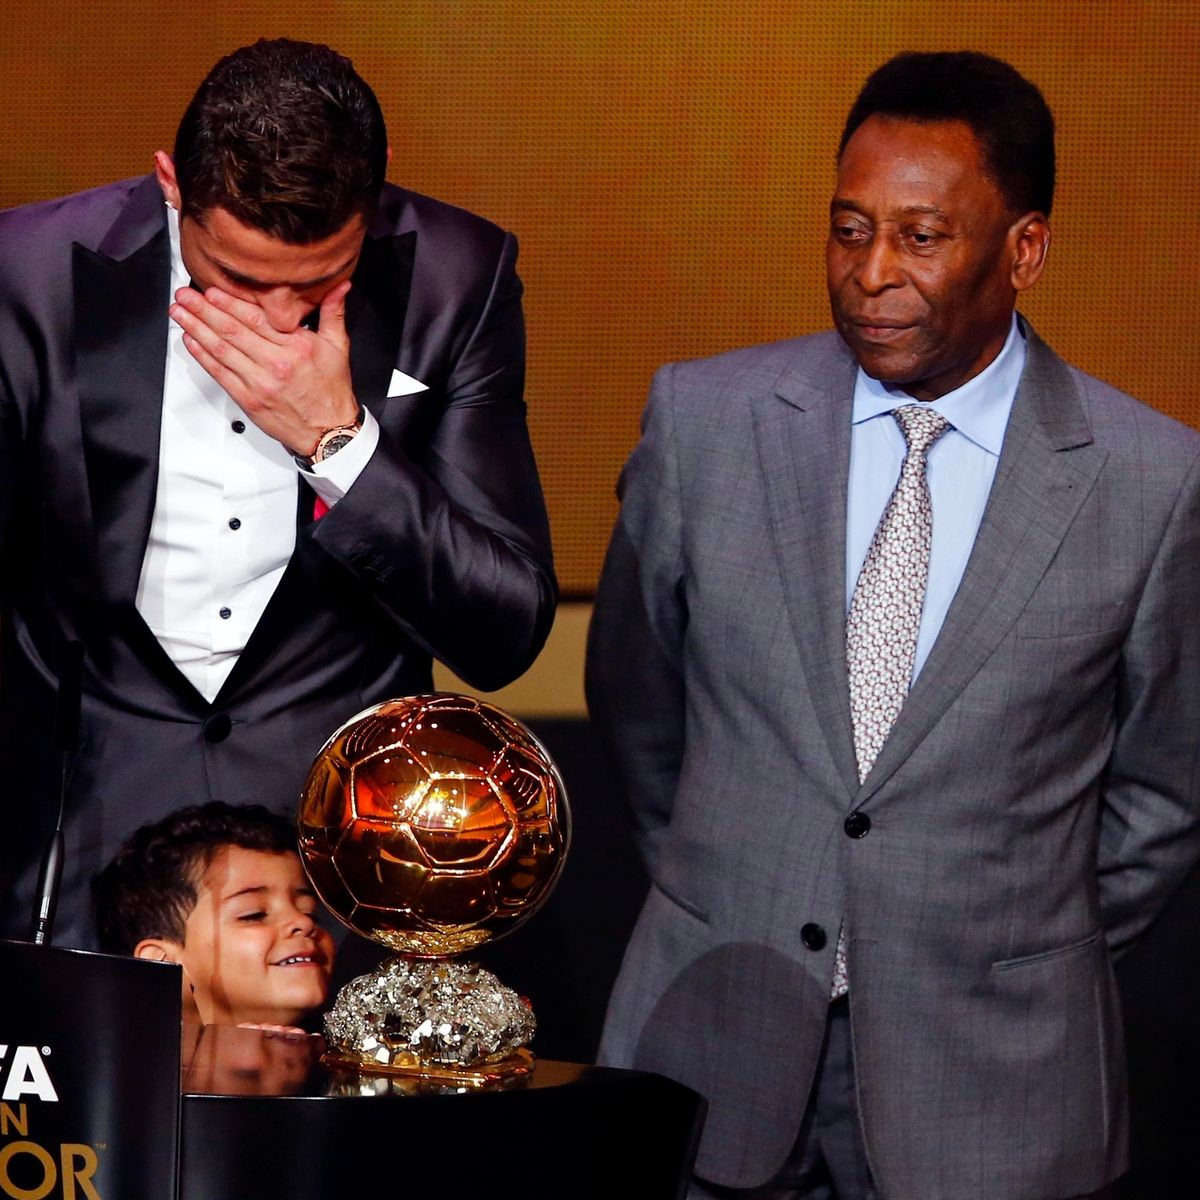 La lettre d’adieu déchirante et touchante de Ronaldo après le décès de Pelé